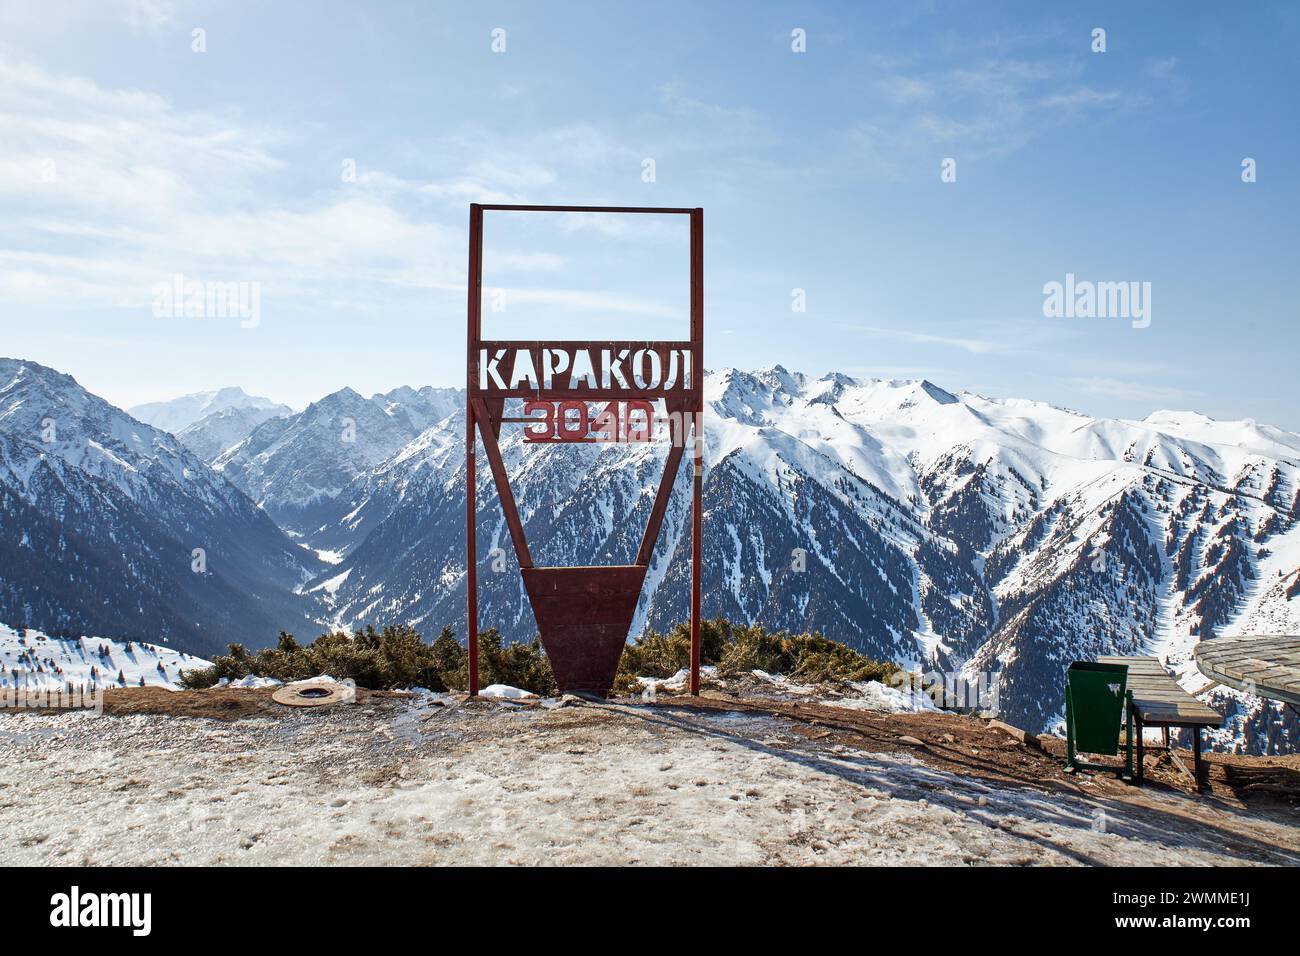 Skigebiet Karakol. Panoramablick auf die Winterberge in Kirgisistan. Schneebedeckte Gipfel, natürliche Landschaft an sonnigen Tagen. Erholungsgebiet und Schild auf der Spitze des Berges 3040 Meter über dem Meeresspiegel. Stockfoto